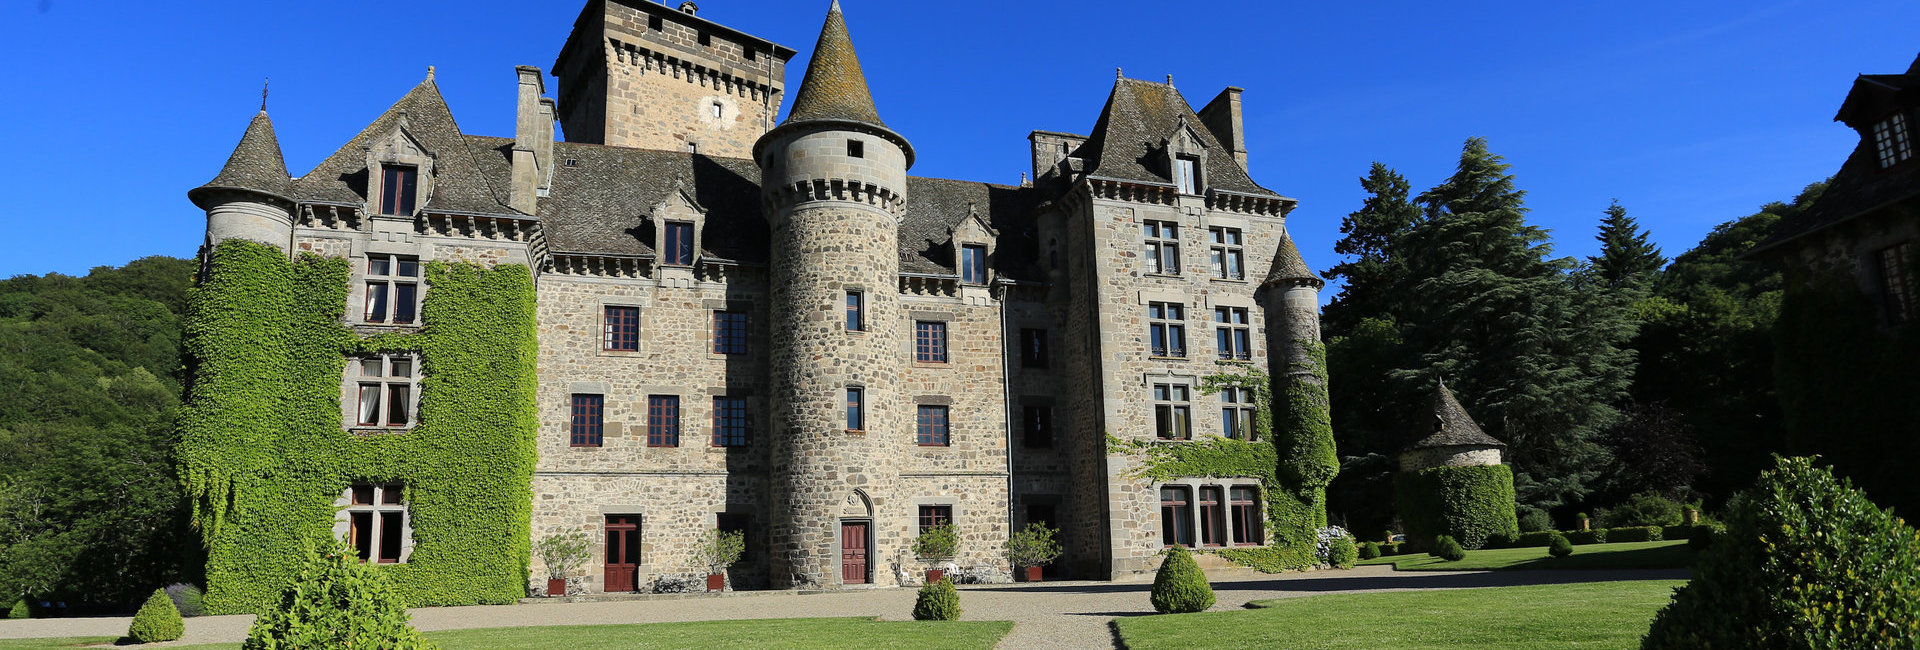 Le château de Pesteil dans le Cantal